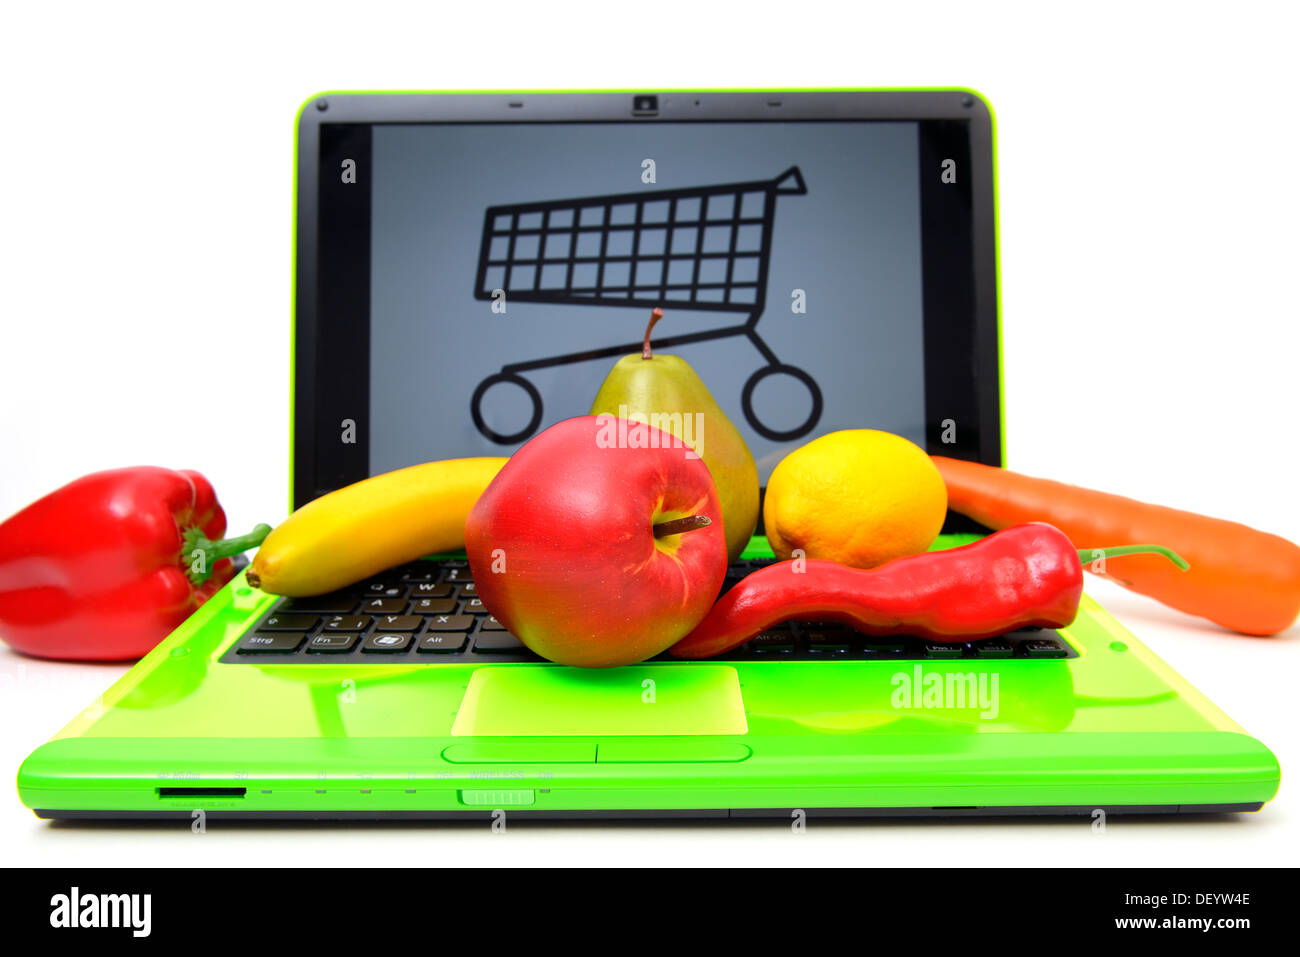 Frutta su un laptop dal carrello, shopping on-line di prodotti alimentari, Obst auf einem Laptop Einkaufswagen mit, Onlineshopping von Lebens Foto Stock